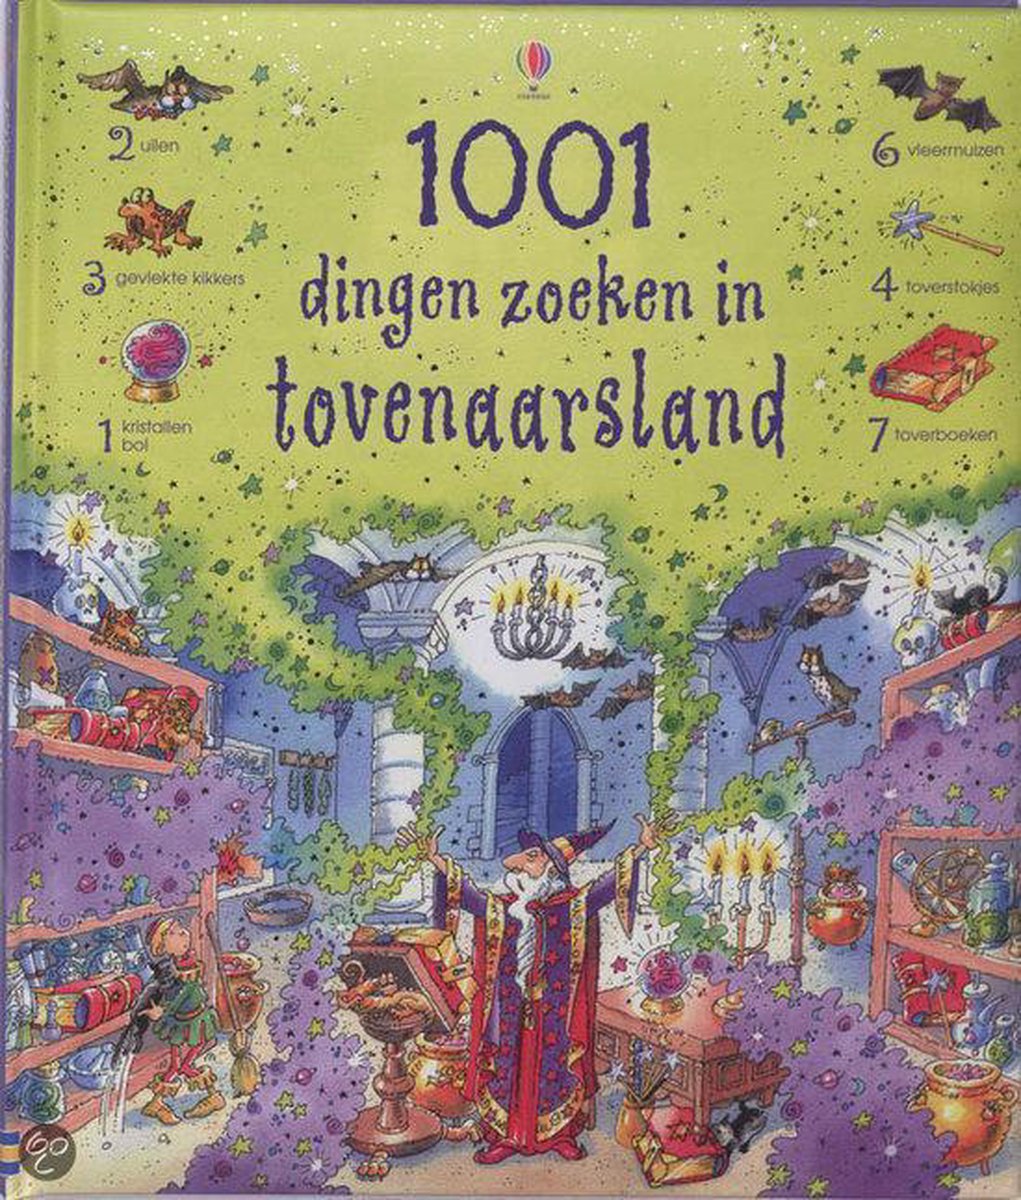 1001 dingen zoeken in tovenaarsland